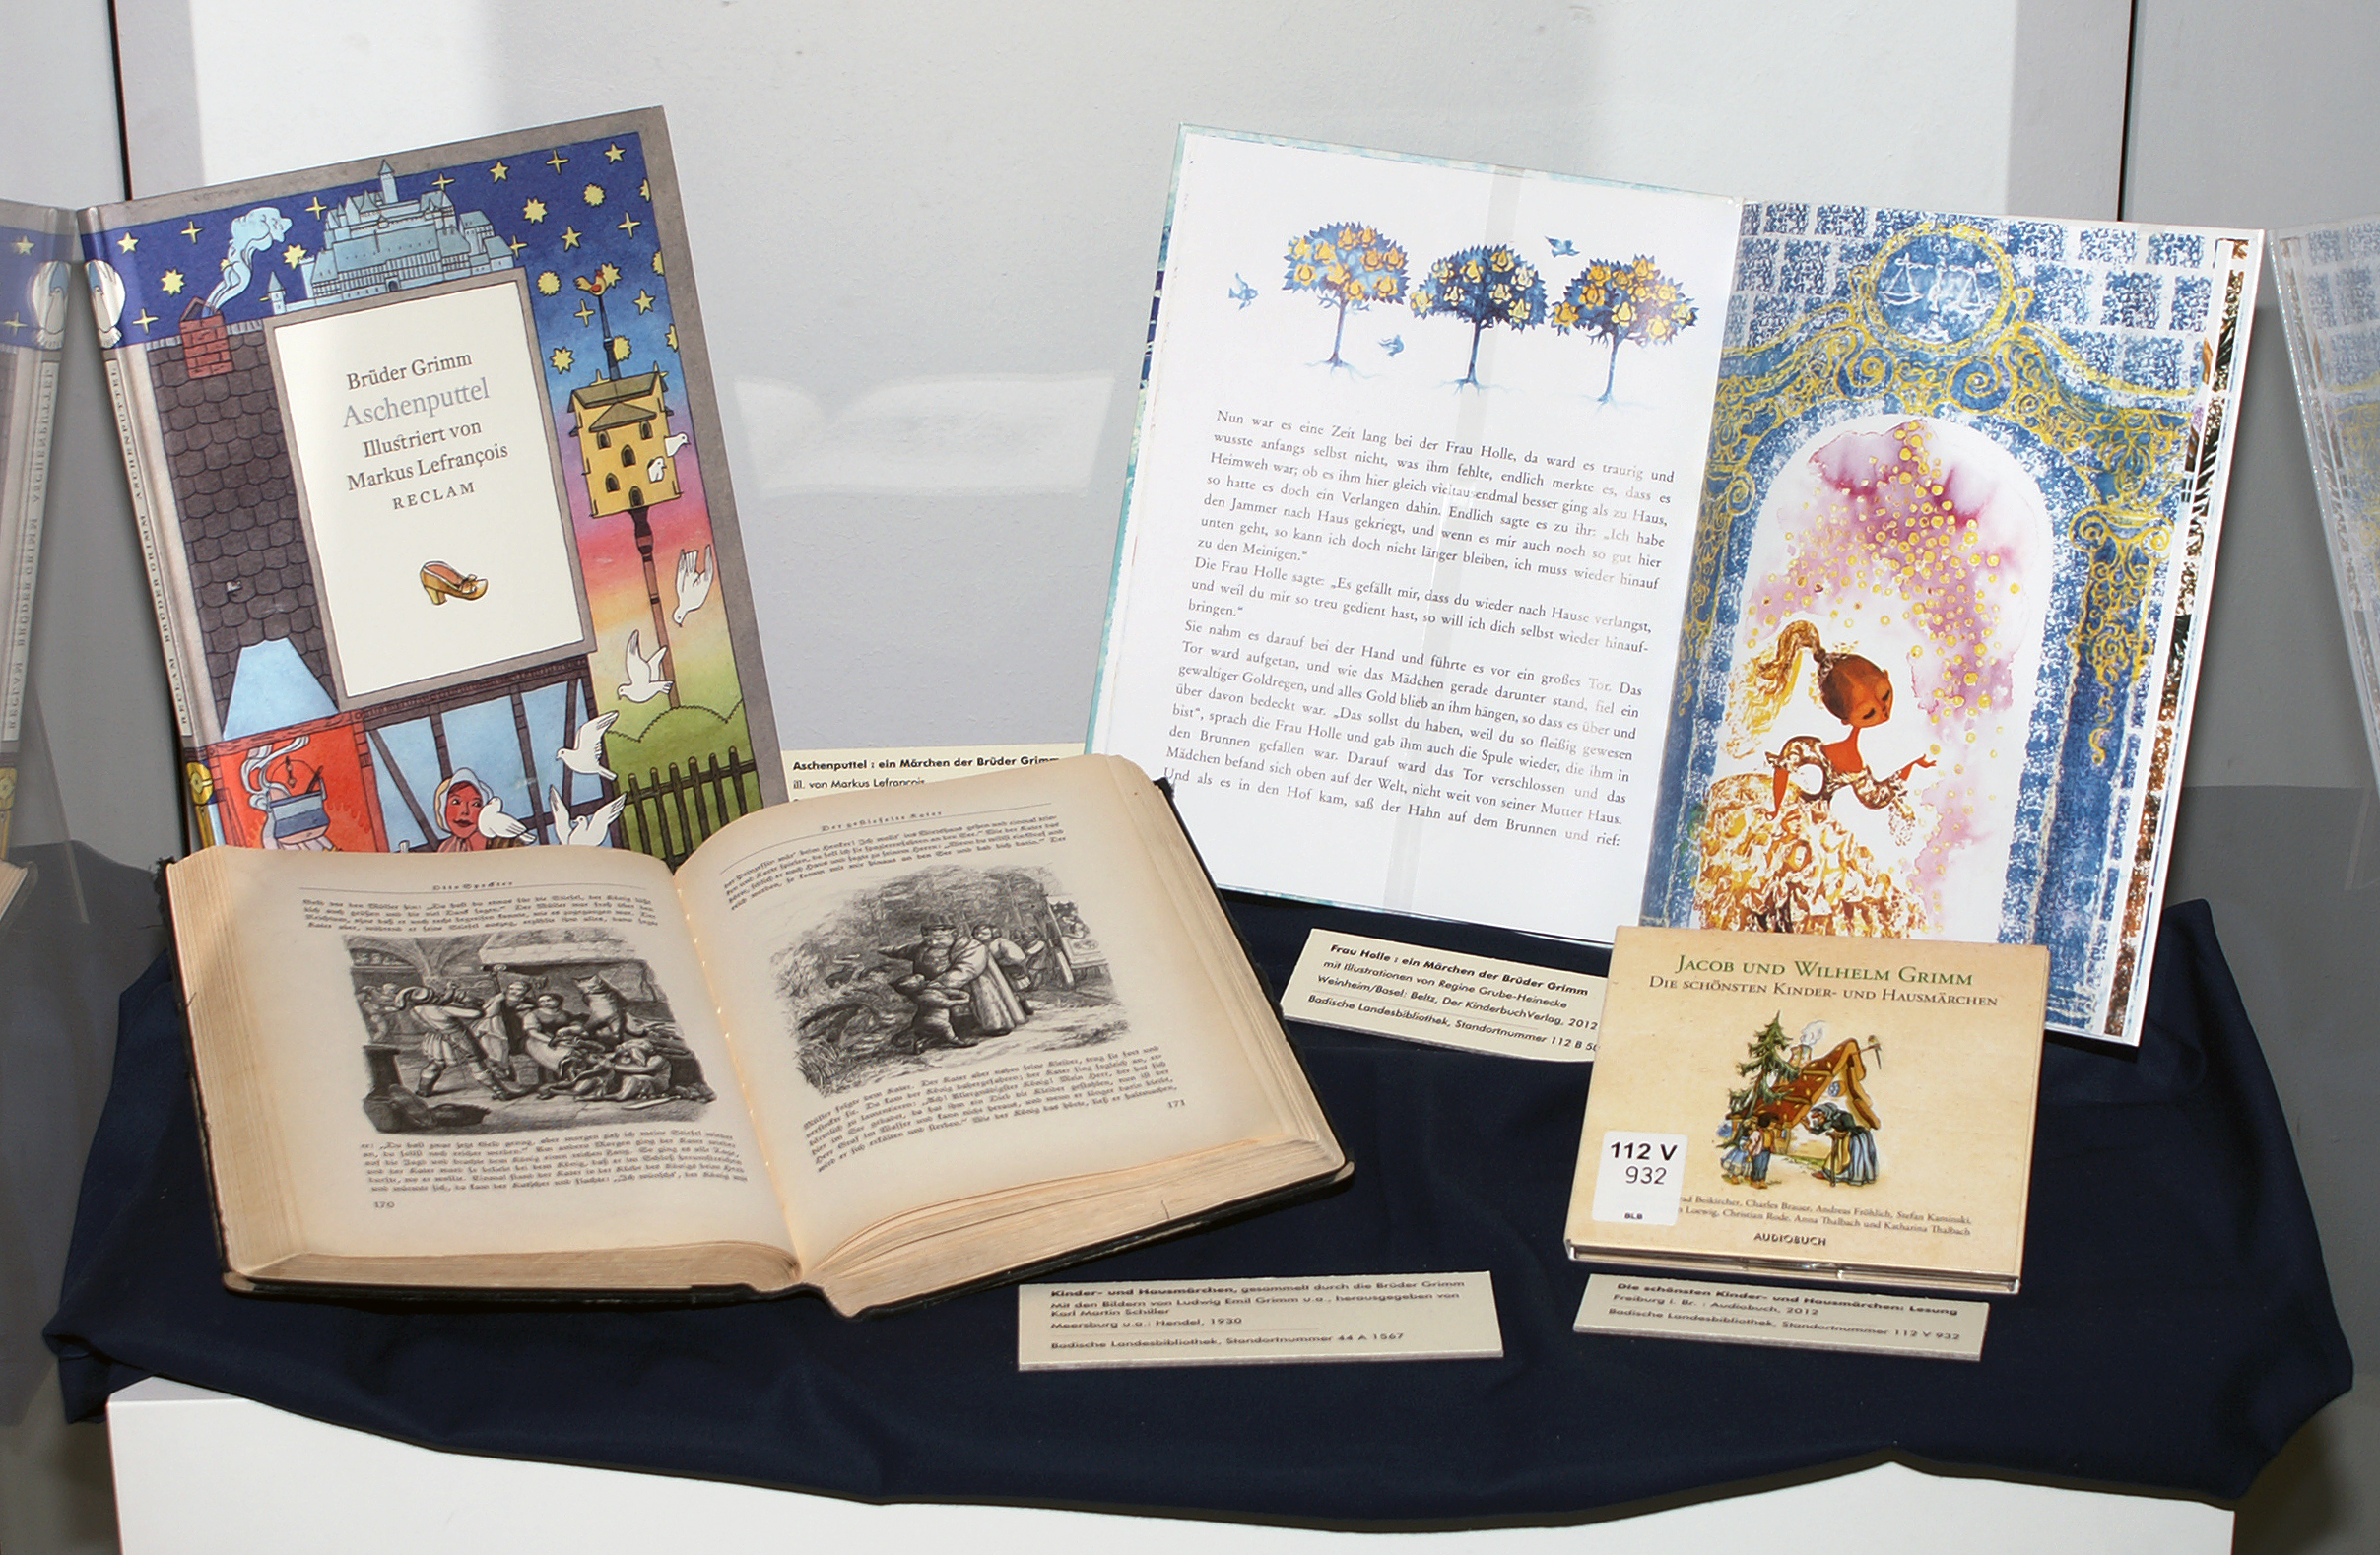 Ausgestellt sind vier Märchenbüchern aus den letzten zwei Jahrhunderten, die Seiten sind unterschiedlich illustriert in Farbe und Schwarz-Weiß.